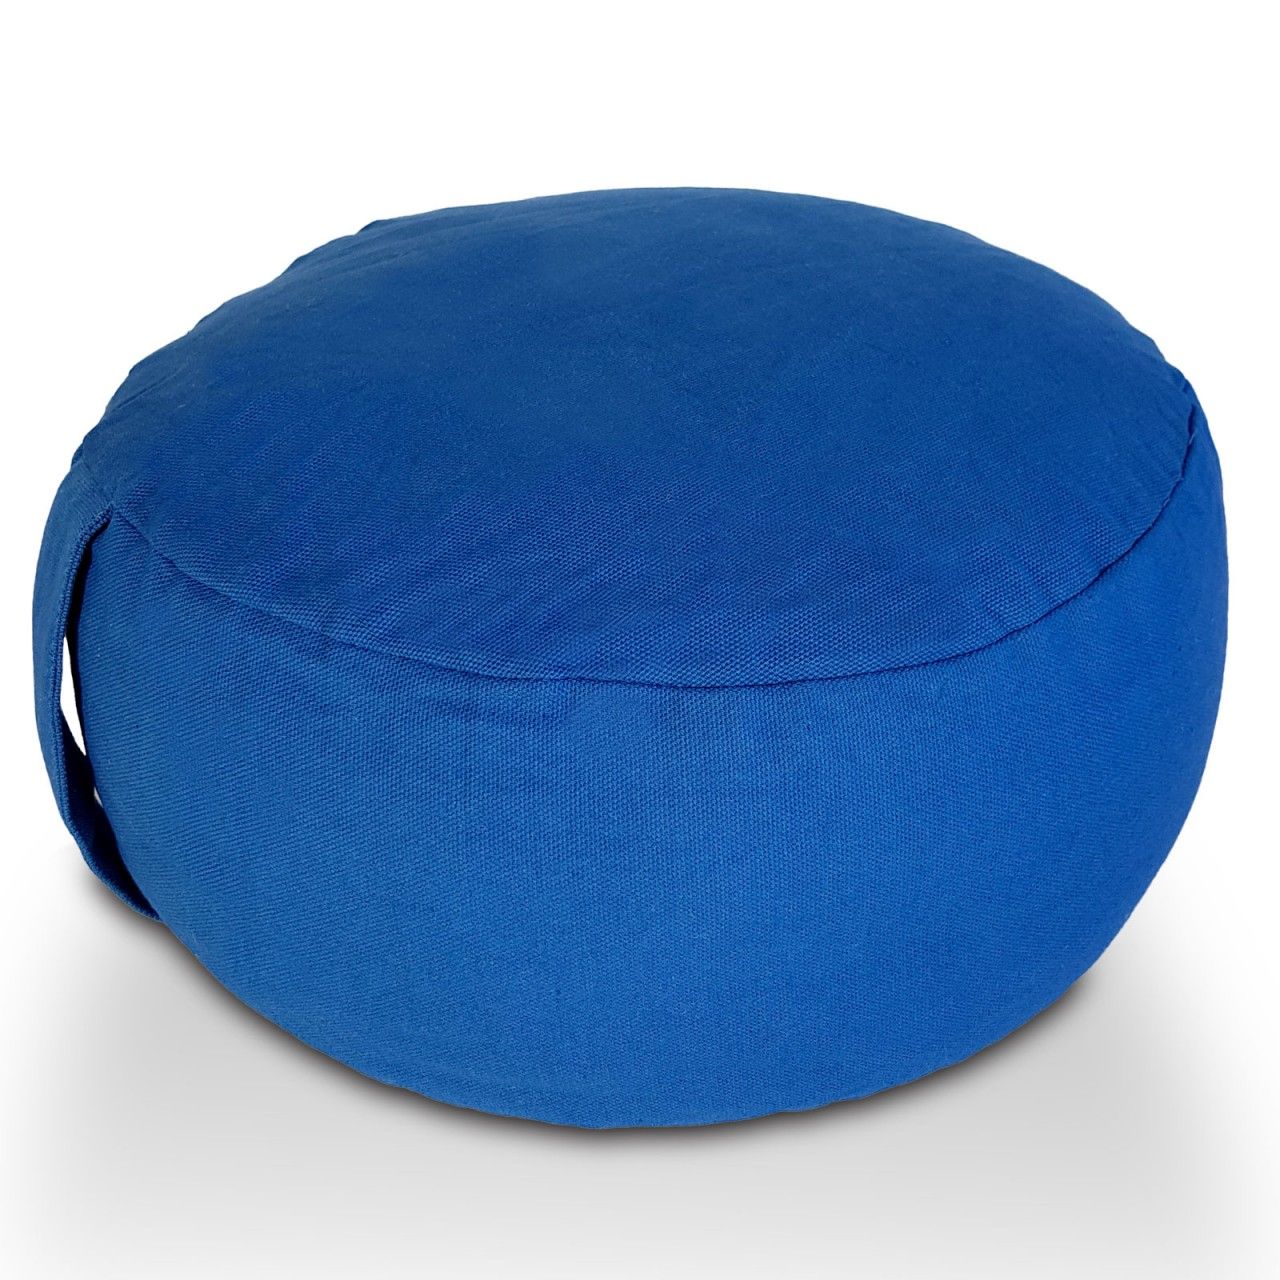 Yogakissen Meditationskissen Sitzkissen Bodenkissen Lotus rund H 16 x &oslash; 31 cm Bezug waschbar blau - navi blue